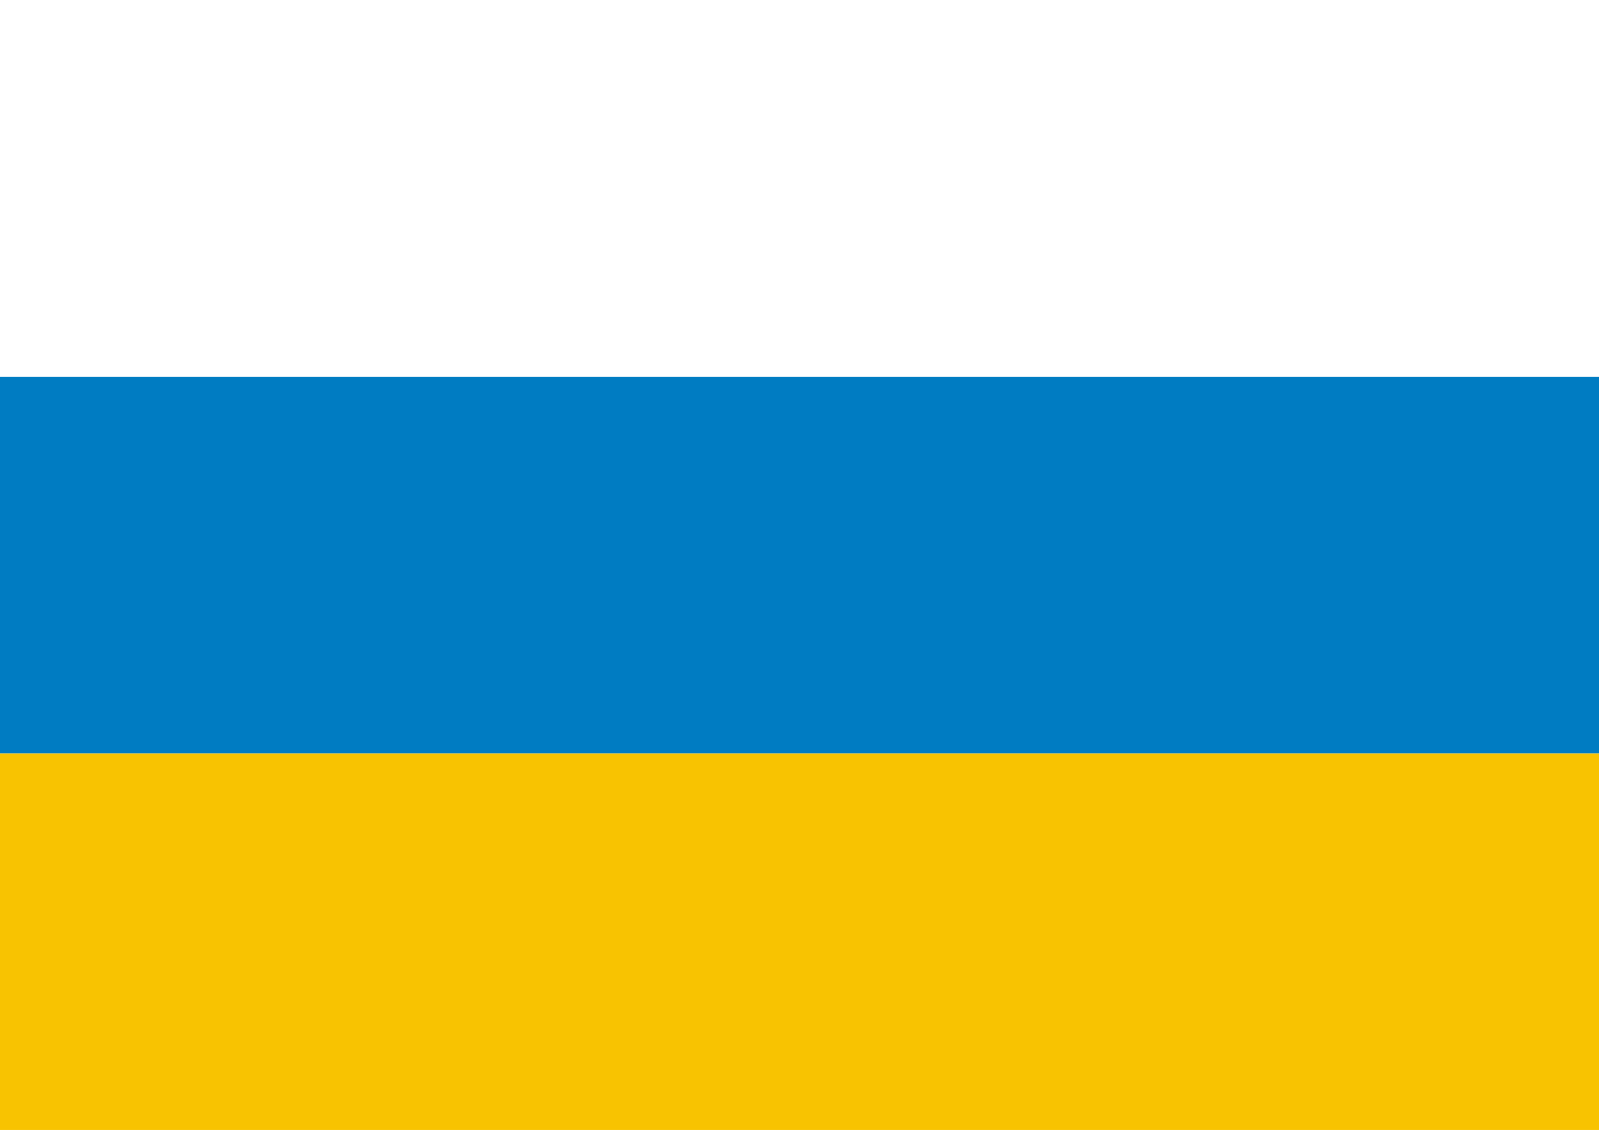 Флаг синий желтый белый. Альтернативный флаг РФ. Альтернативный флаг России. Флаг республиканской России альтернативный флаг. Флаг с цветами синий желтый